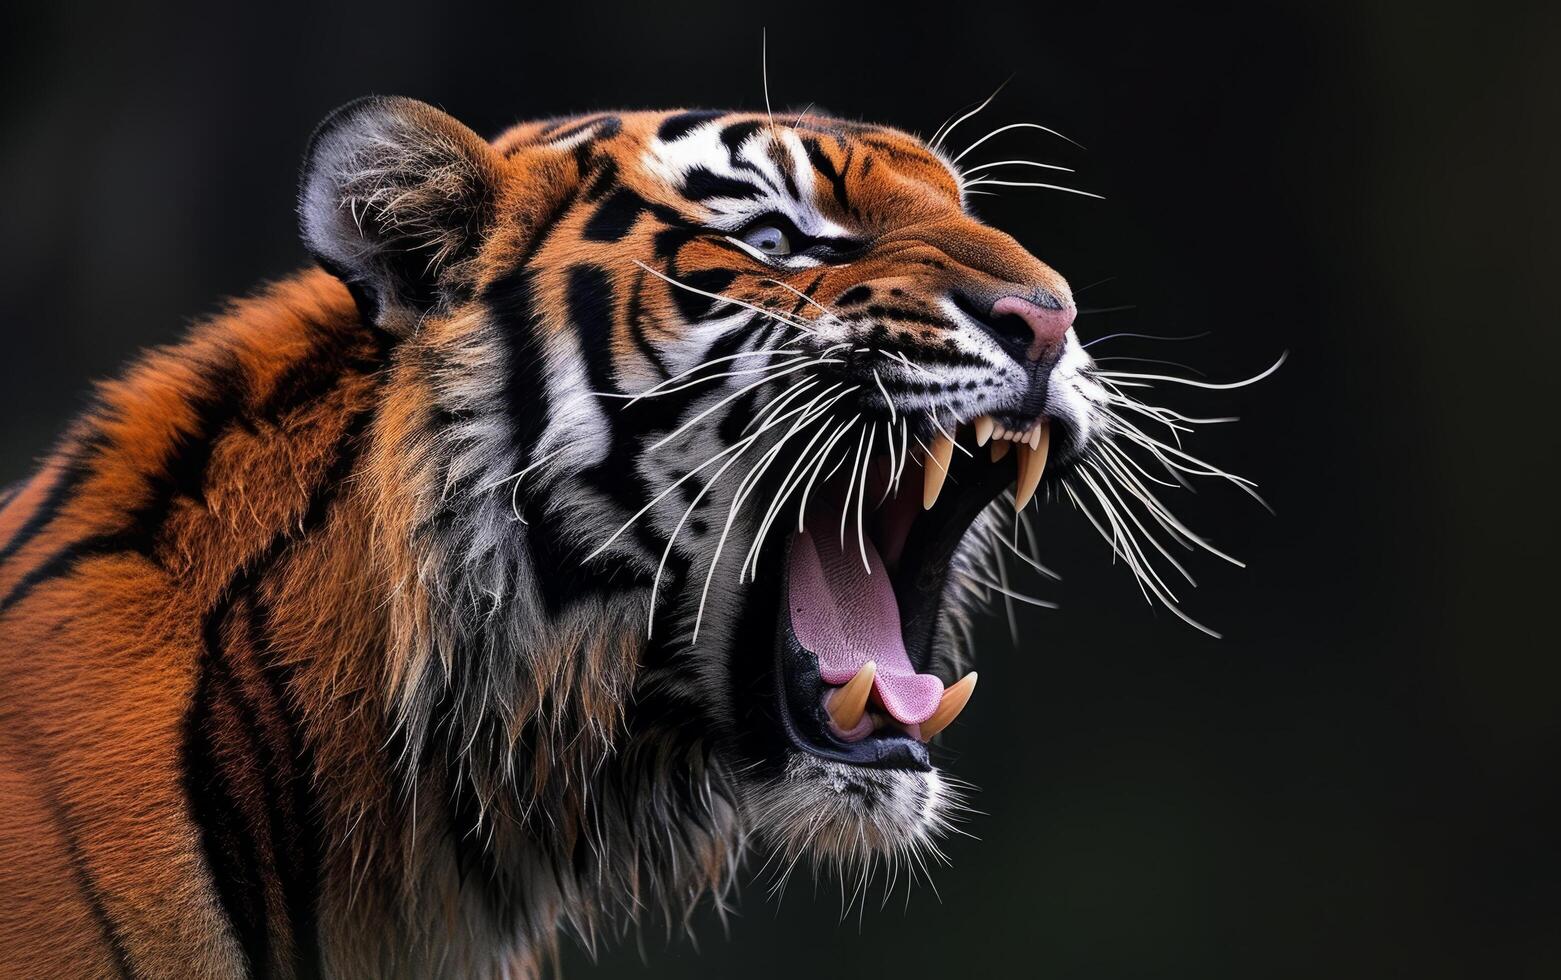 ai gerado Bengala tigre rugindo perfil Visão foto